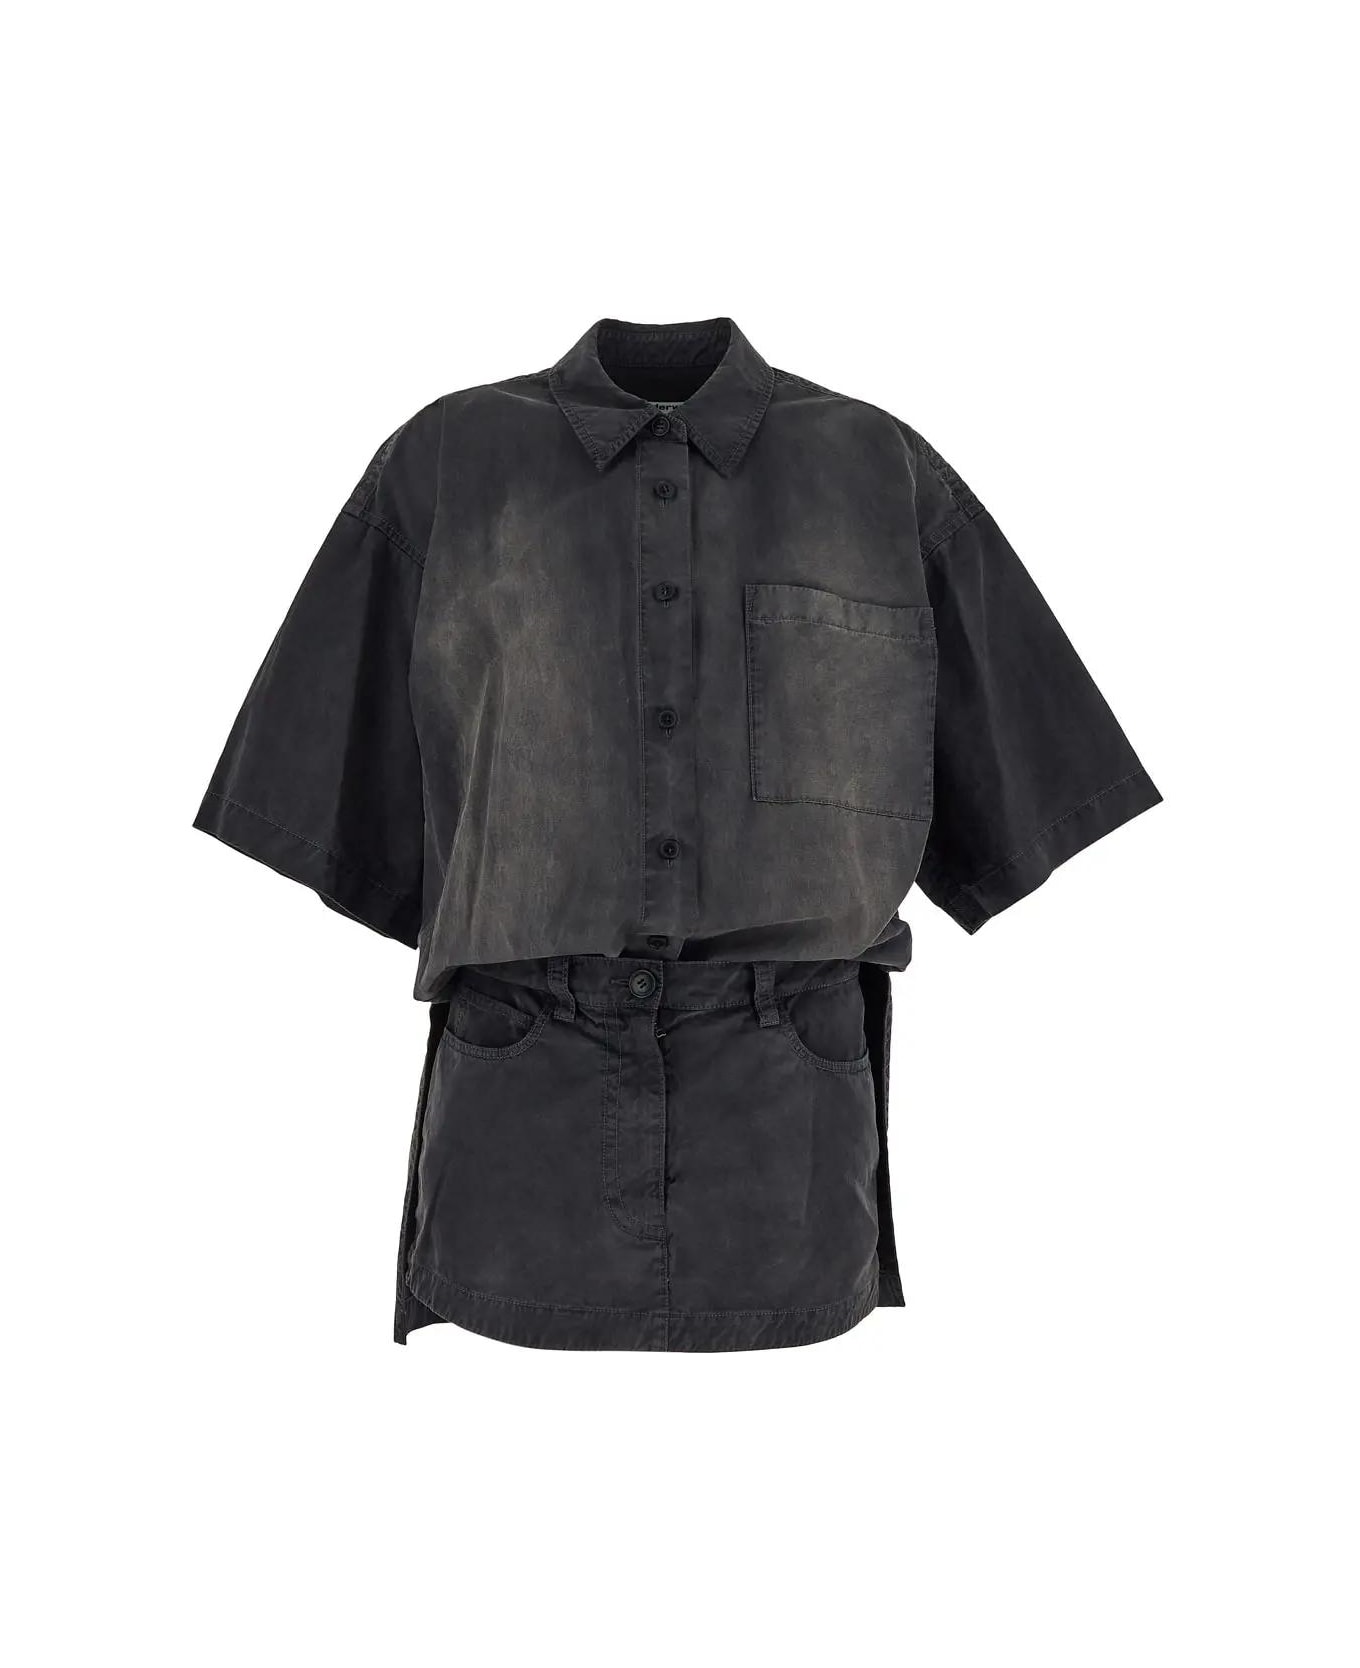 Alexander Wang Shirt Dress - A Washed Black Pearl シャツ